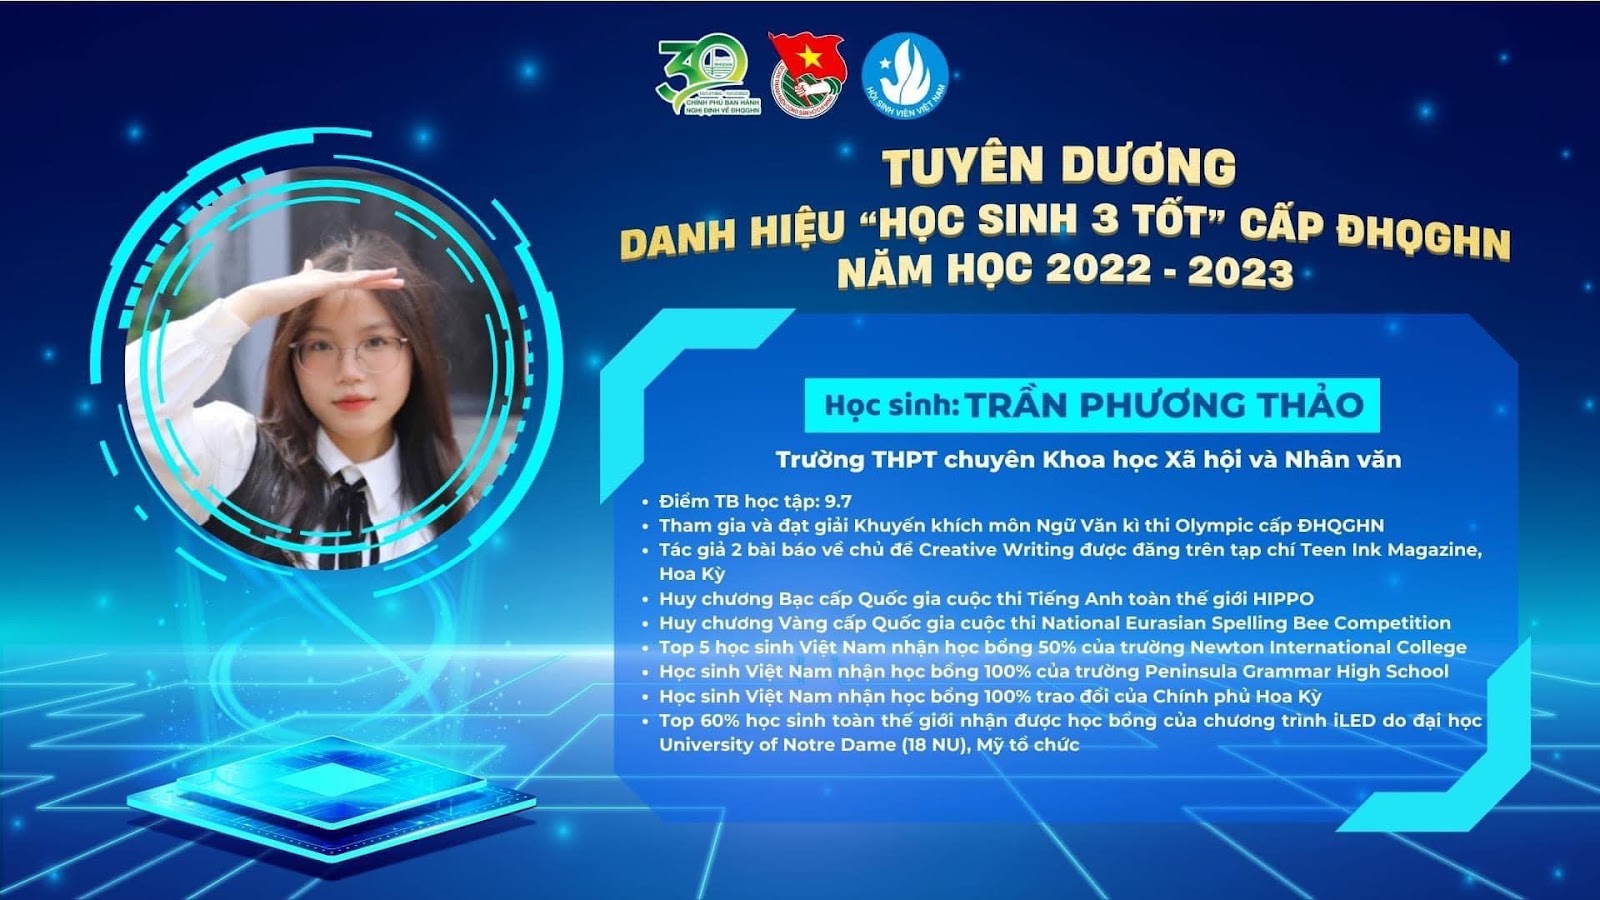 Học sinh Trần Phương Thảo đạt danh hiệu “Học sinh 3 tốt” năm học 2022 - 2023 cấp Đại học Quốc gia Hà Nội